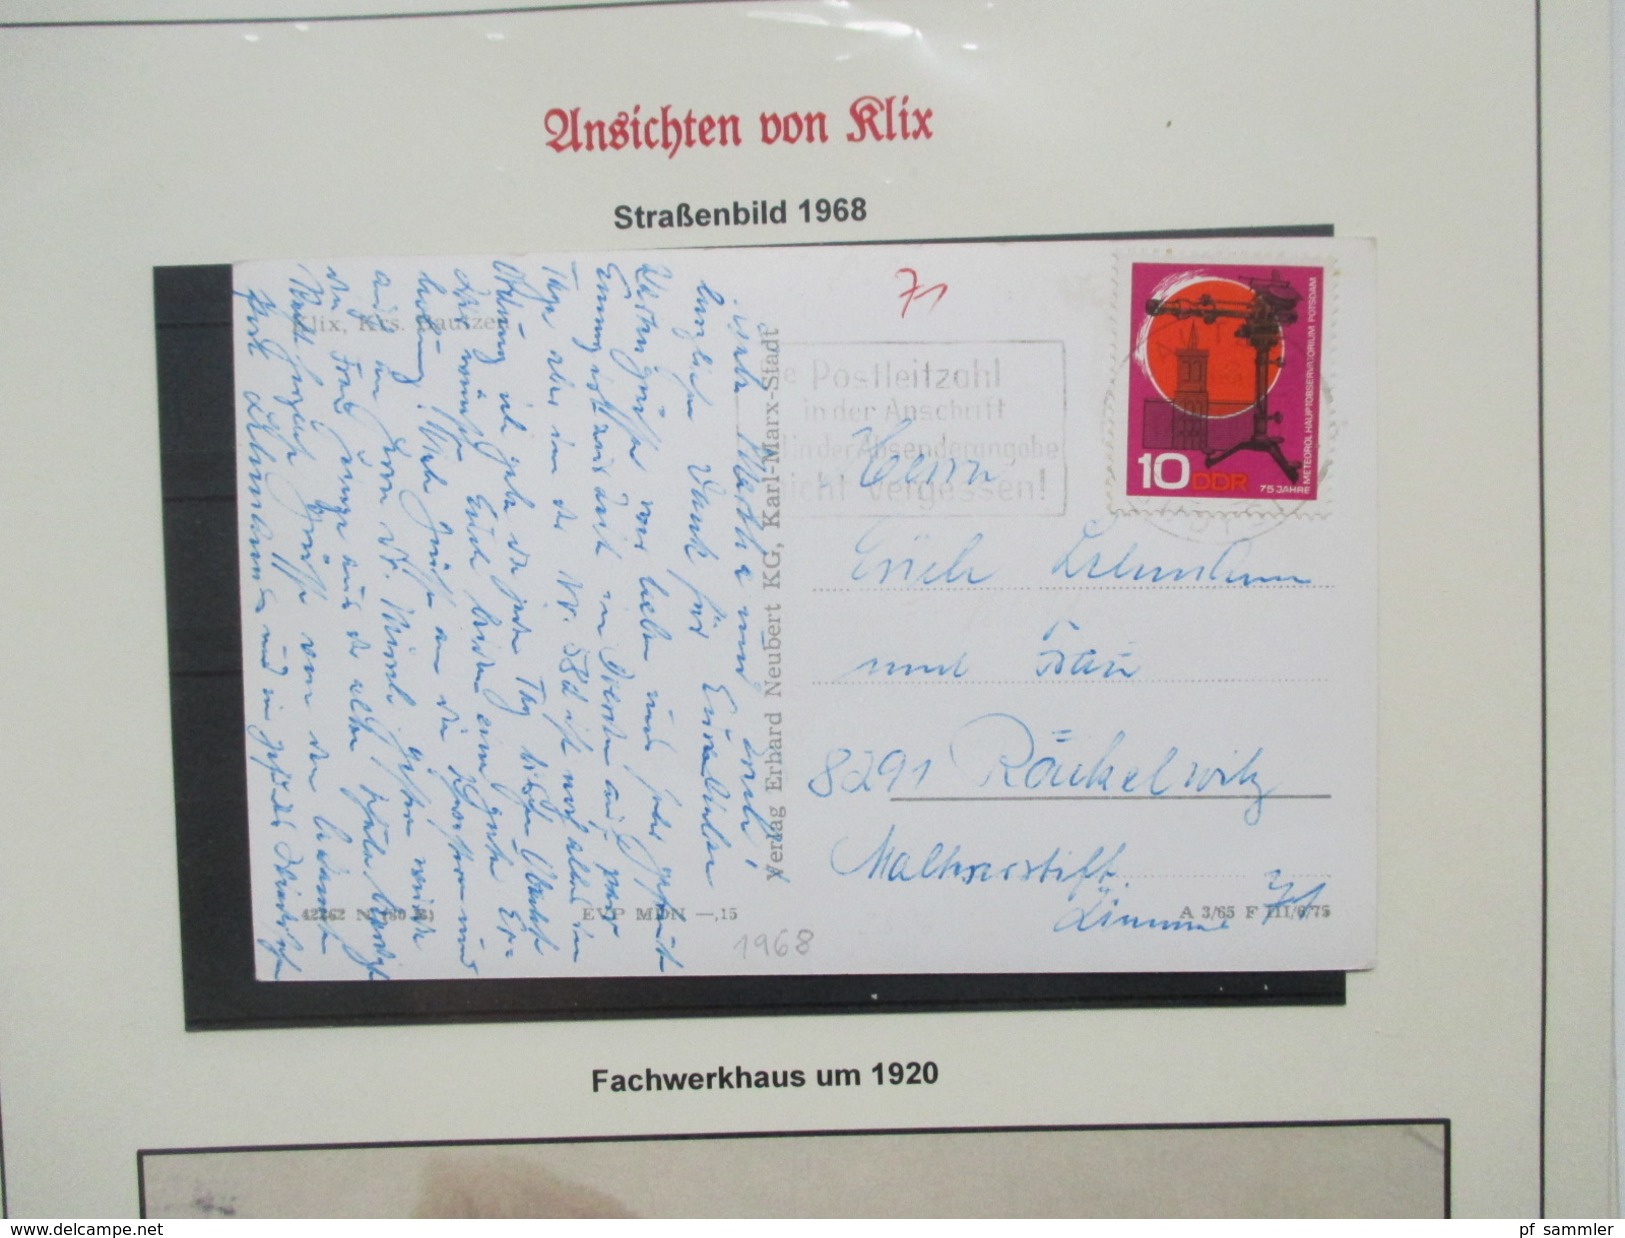 Klix (Sachsen) Heimatsammlung 13 Ansichtskarten / PK ab 1919. Alte Zeitung Heimatklänge von 1924. Interessant?!